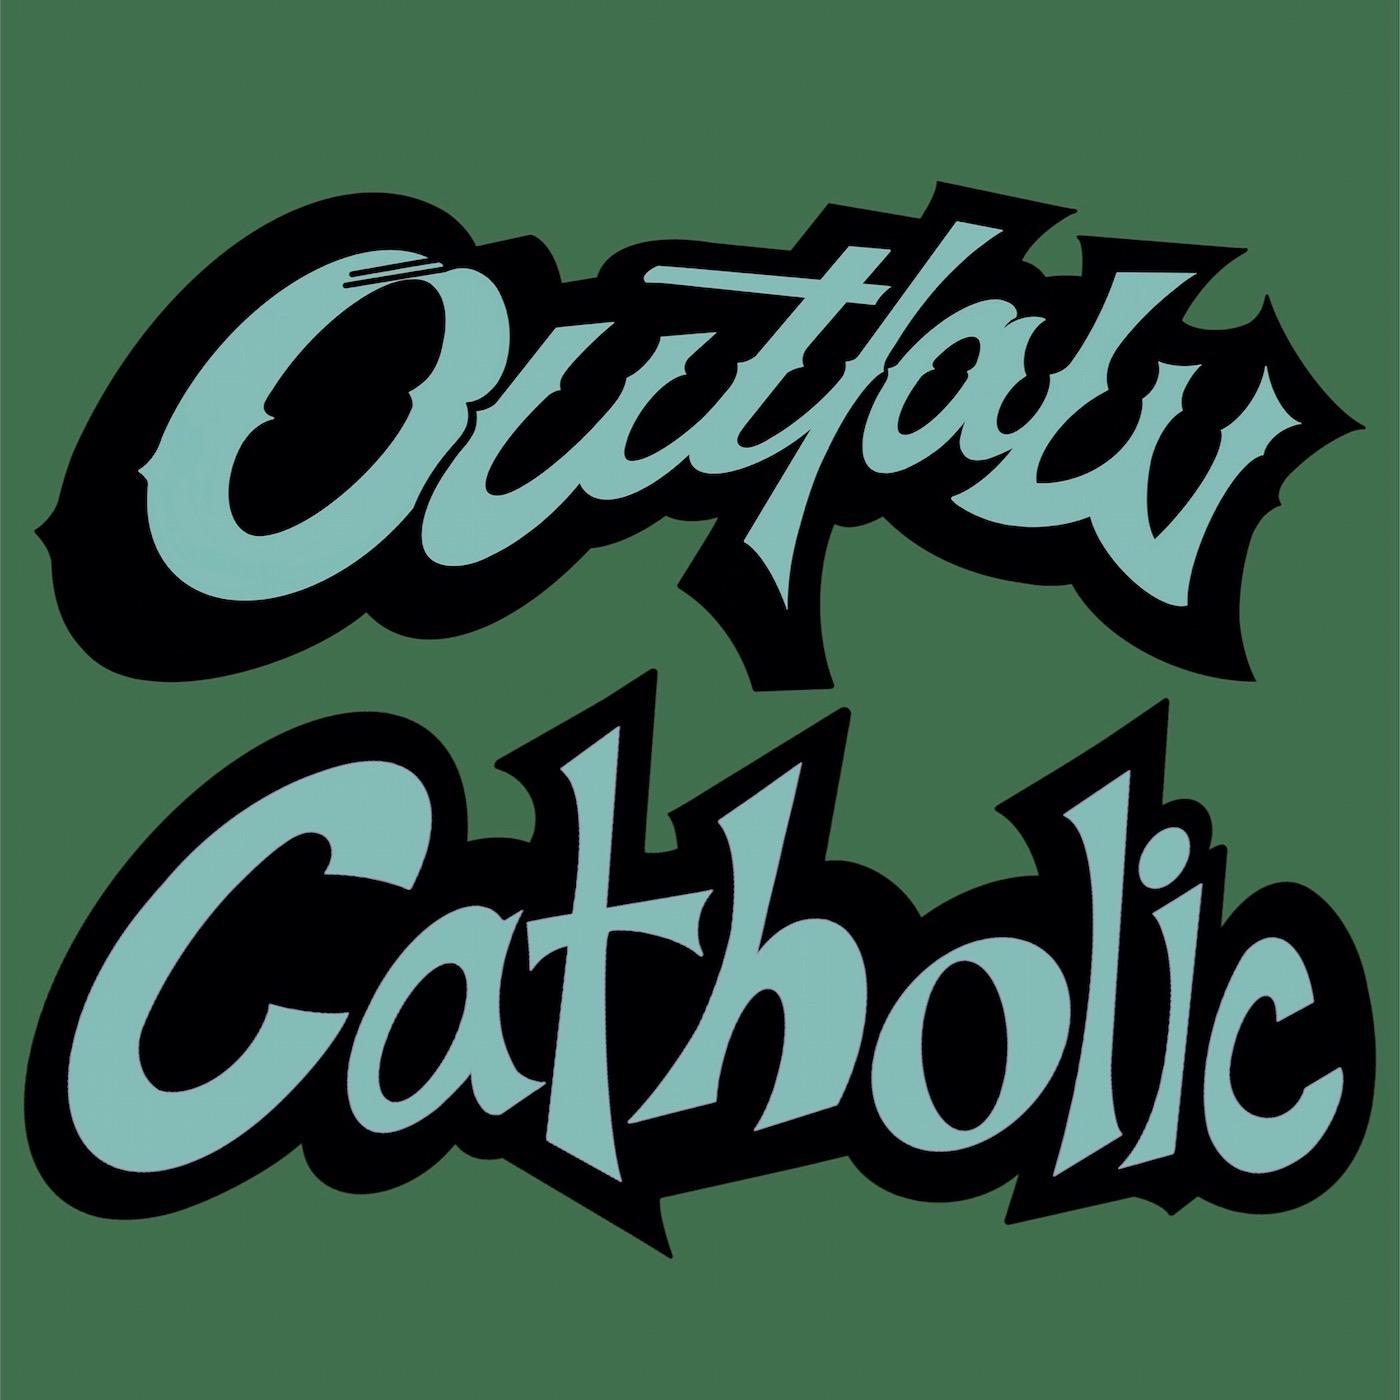 Outlaw Catholic